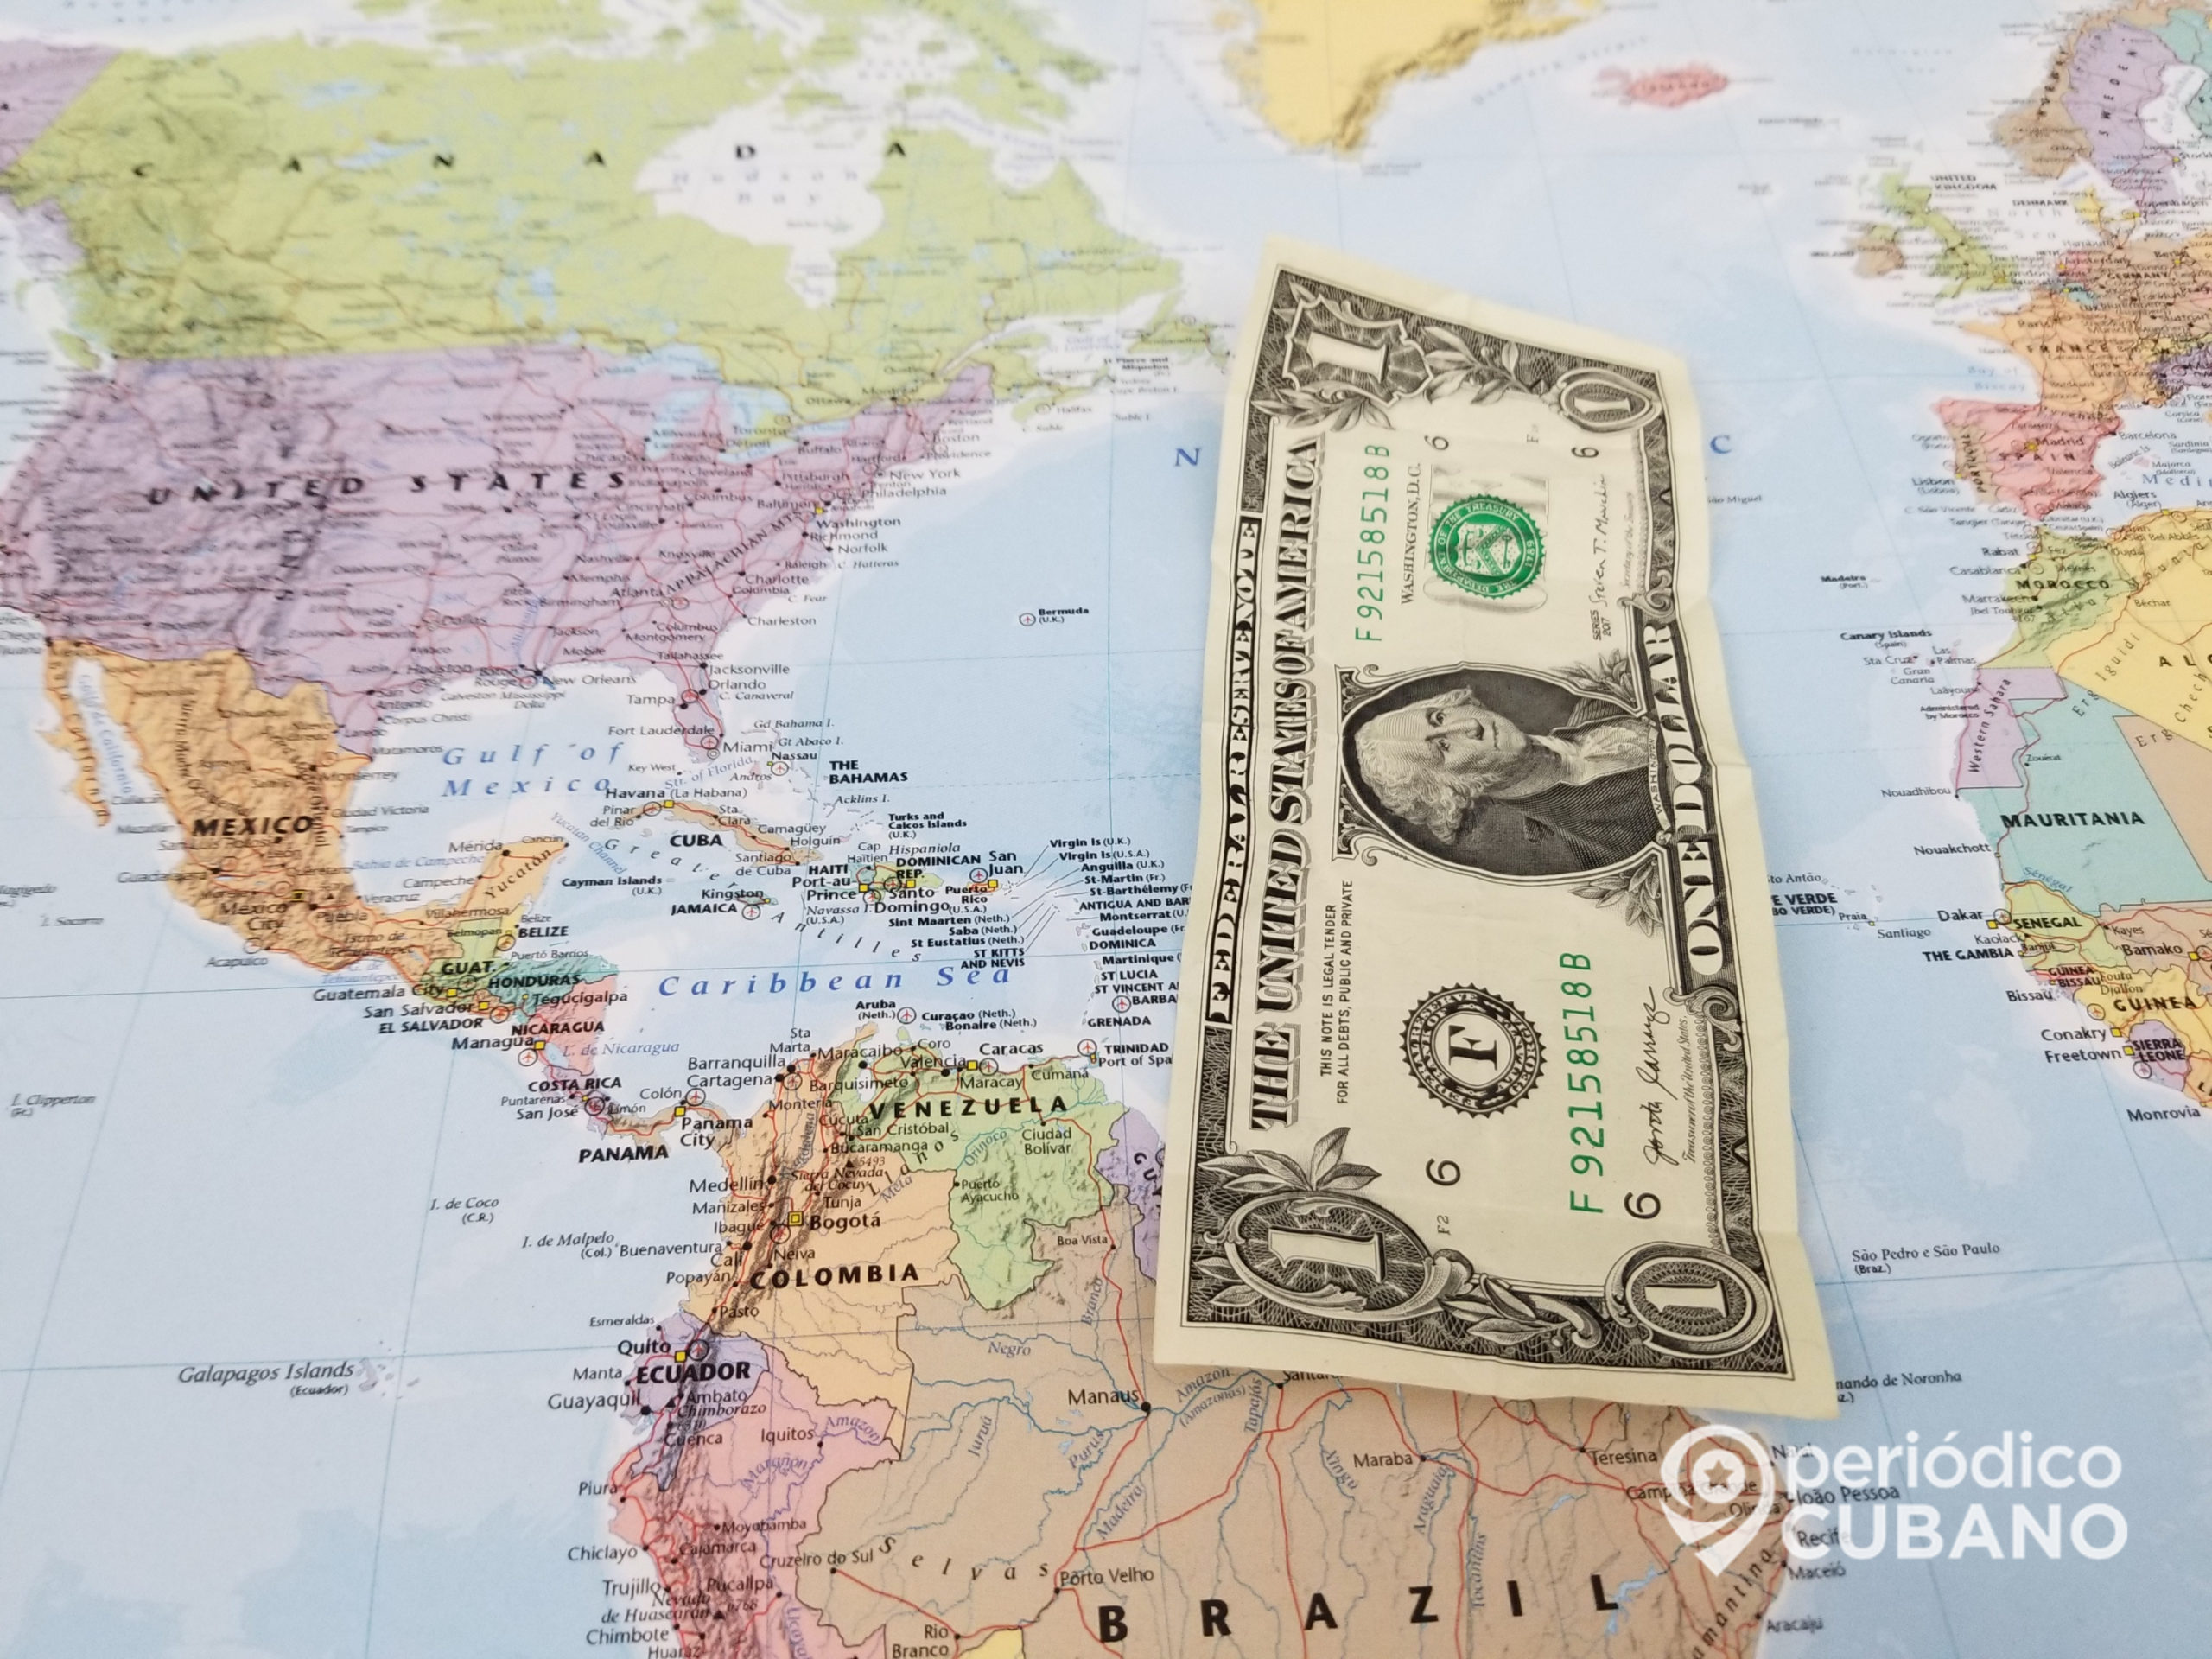 Sendvalu, plataforma de envío de remesas a Cuba, deja de funcionar por “razones bancarias”